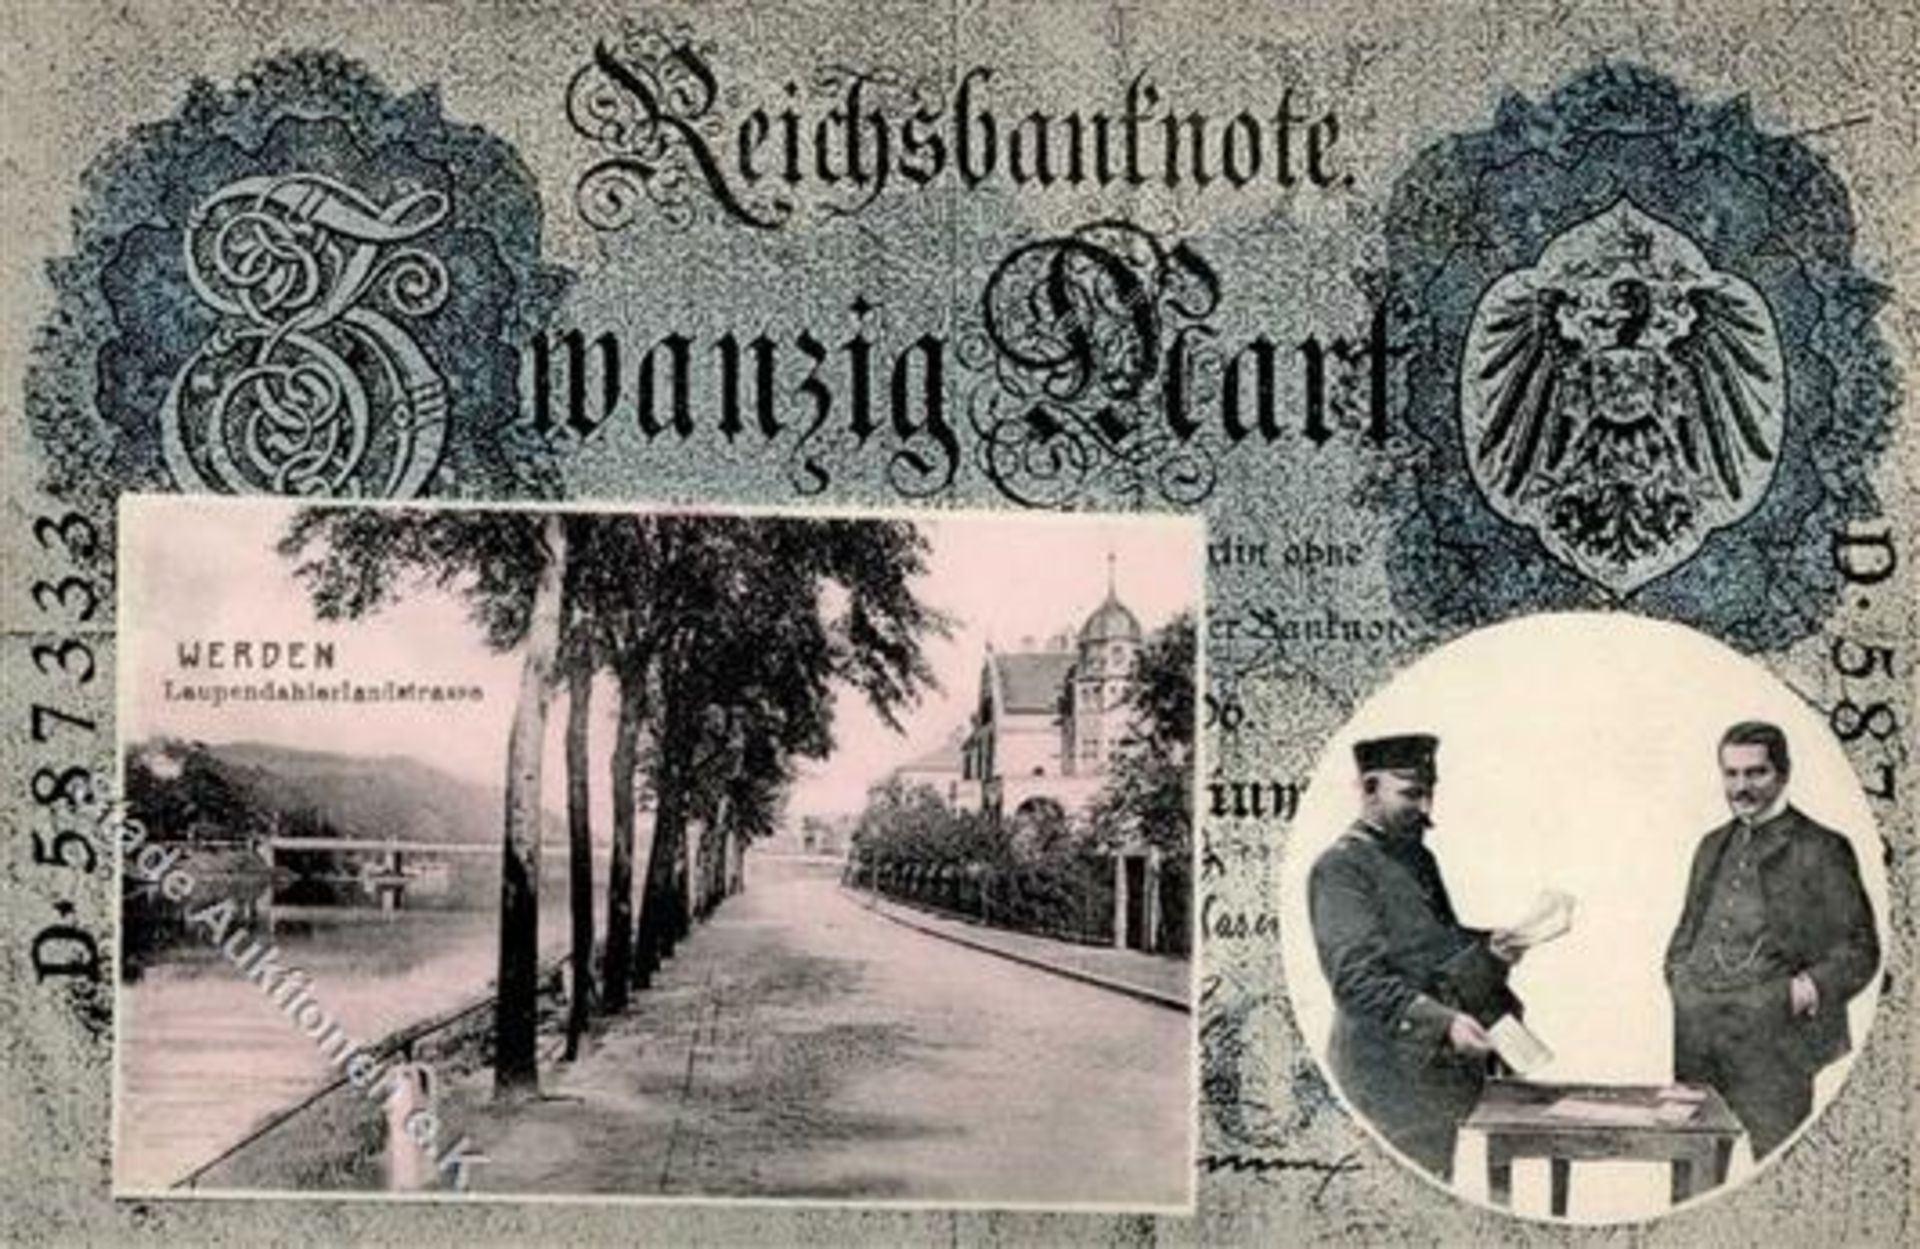 Werden (4300) Laupendahlerlandstrasse Geldschein AK 1908 IDieses Los wird in einer online-Auktion